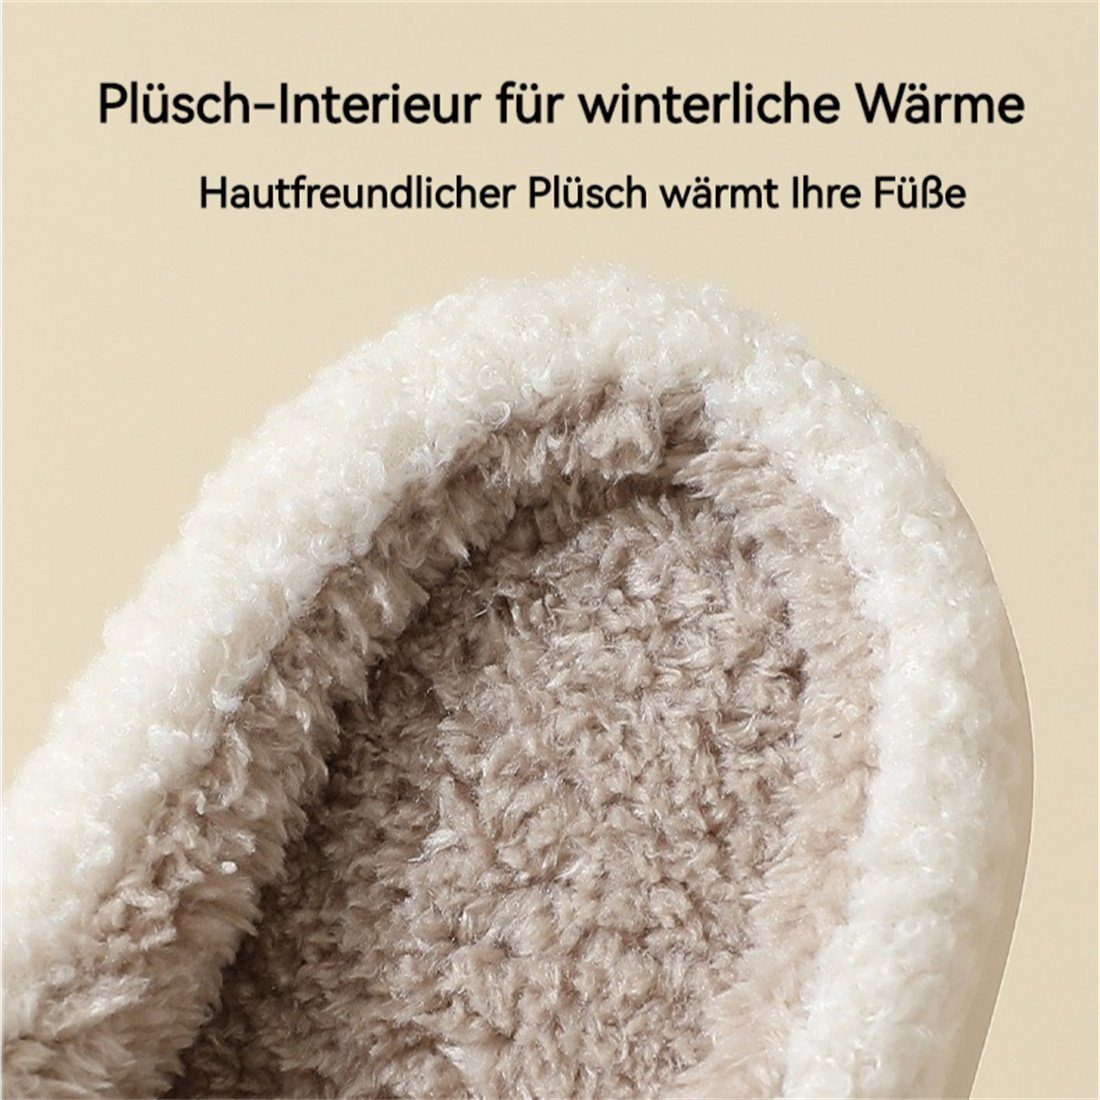 Frauen Plüsch DÖRÖY Plüsch Hausschuhe, Weiß Schuhe Baumwolle rutschfeste Winter Hausschuhe warm Bär